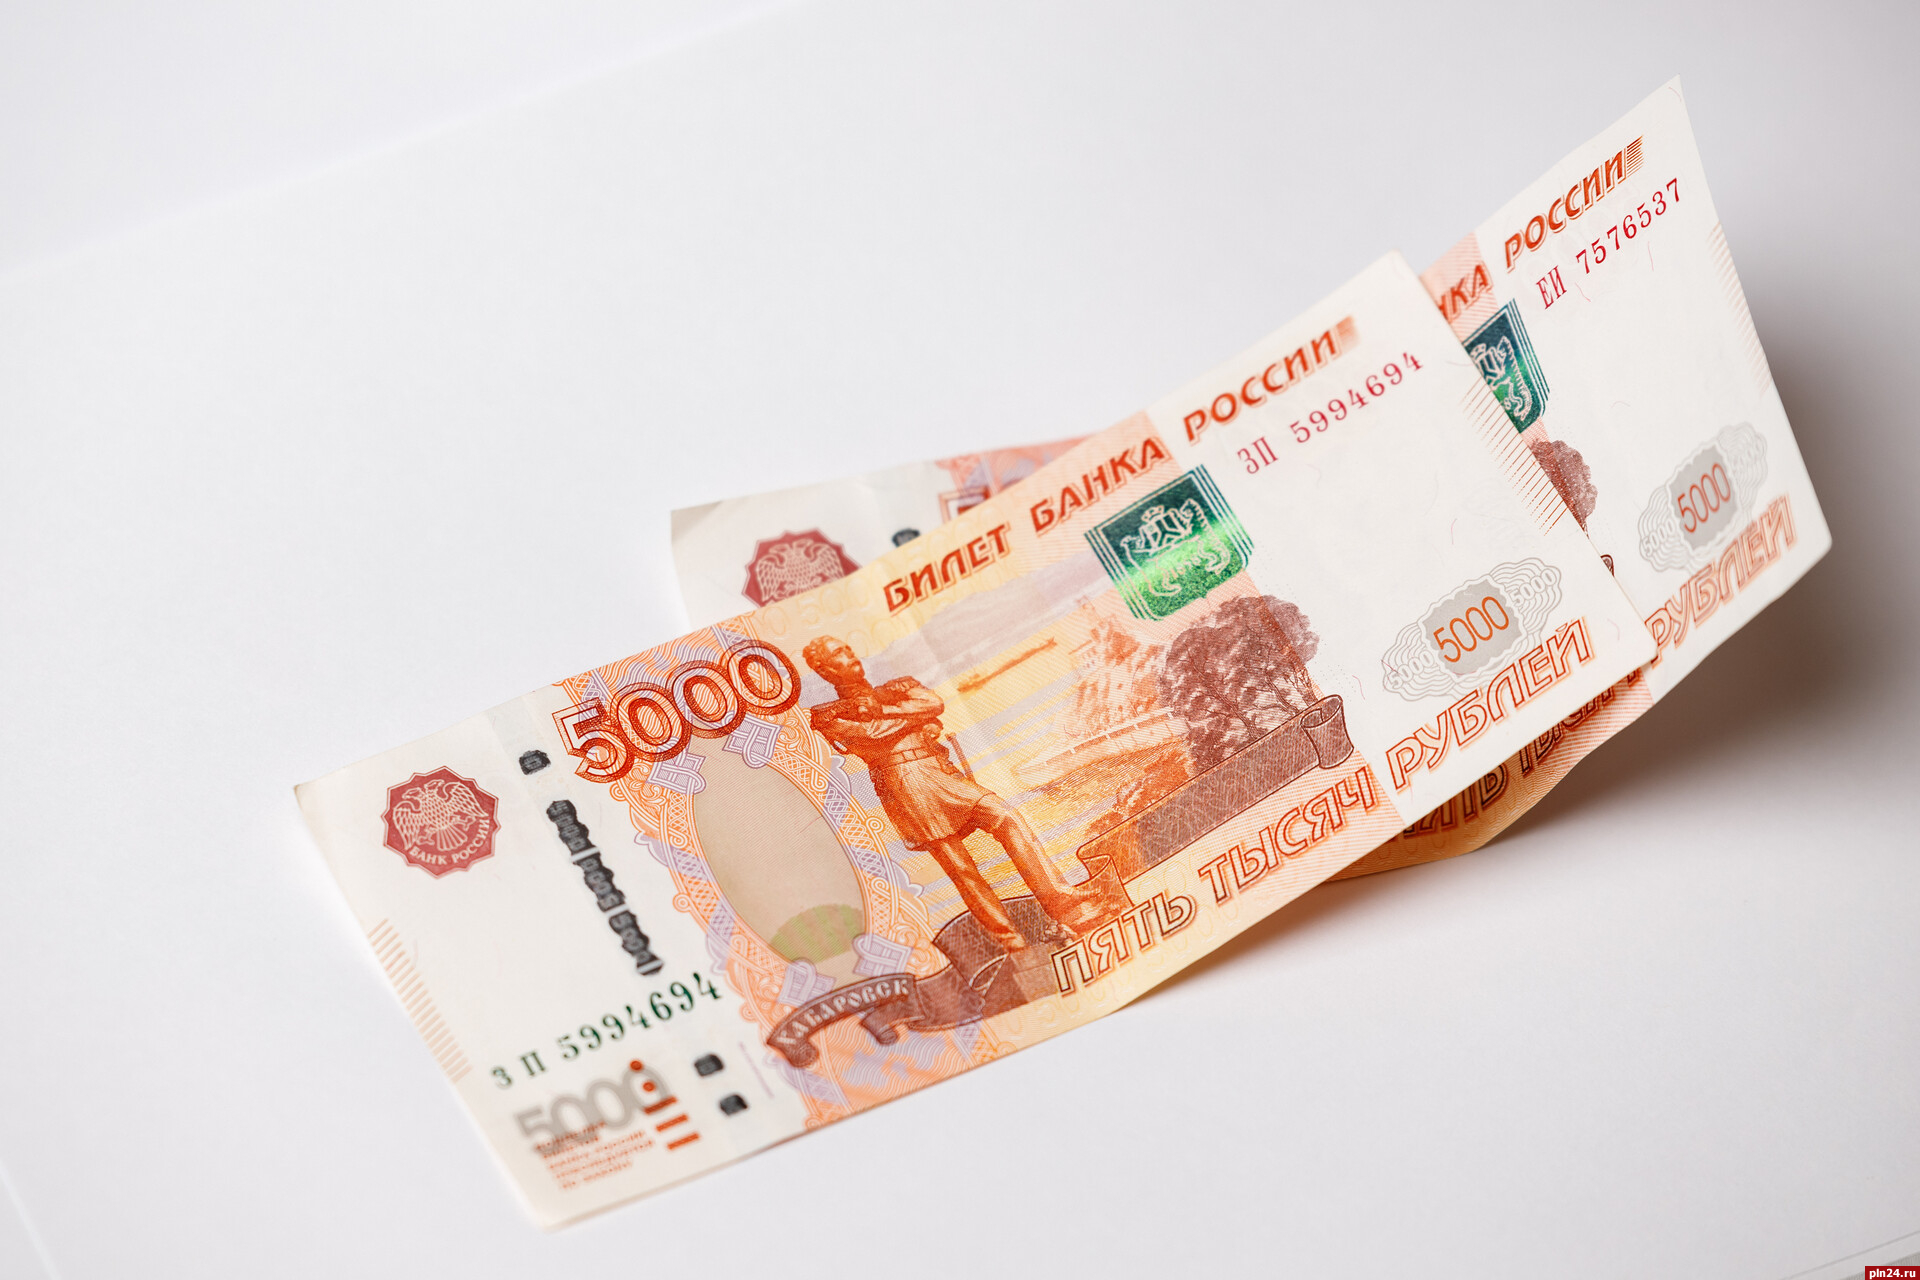 Деньги 5 000 рублей